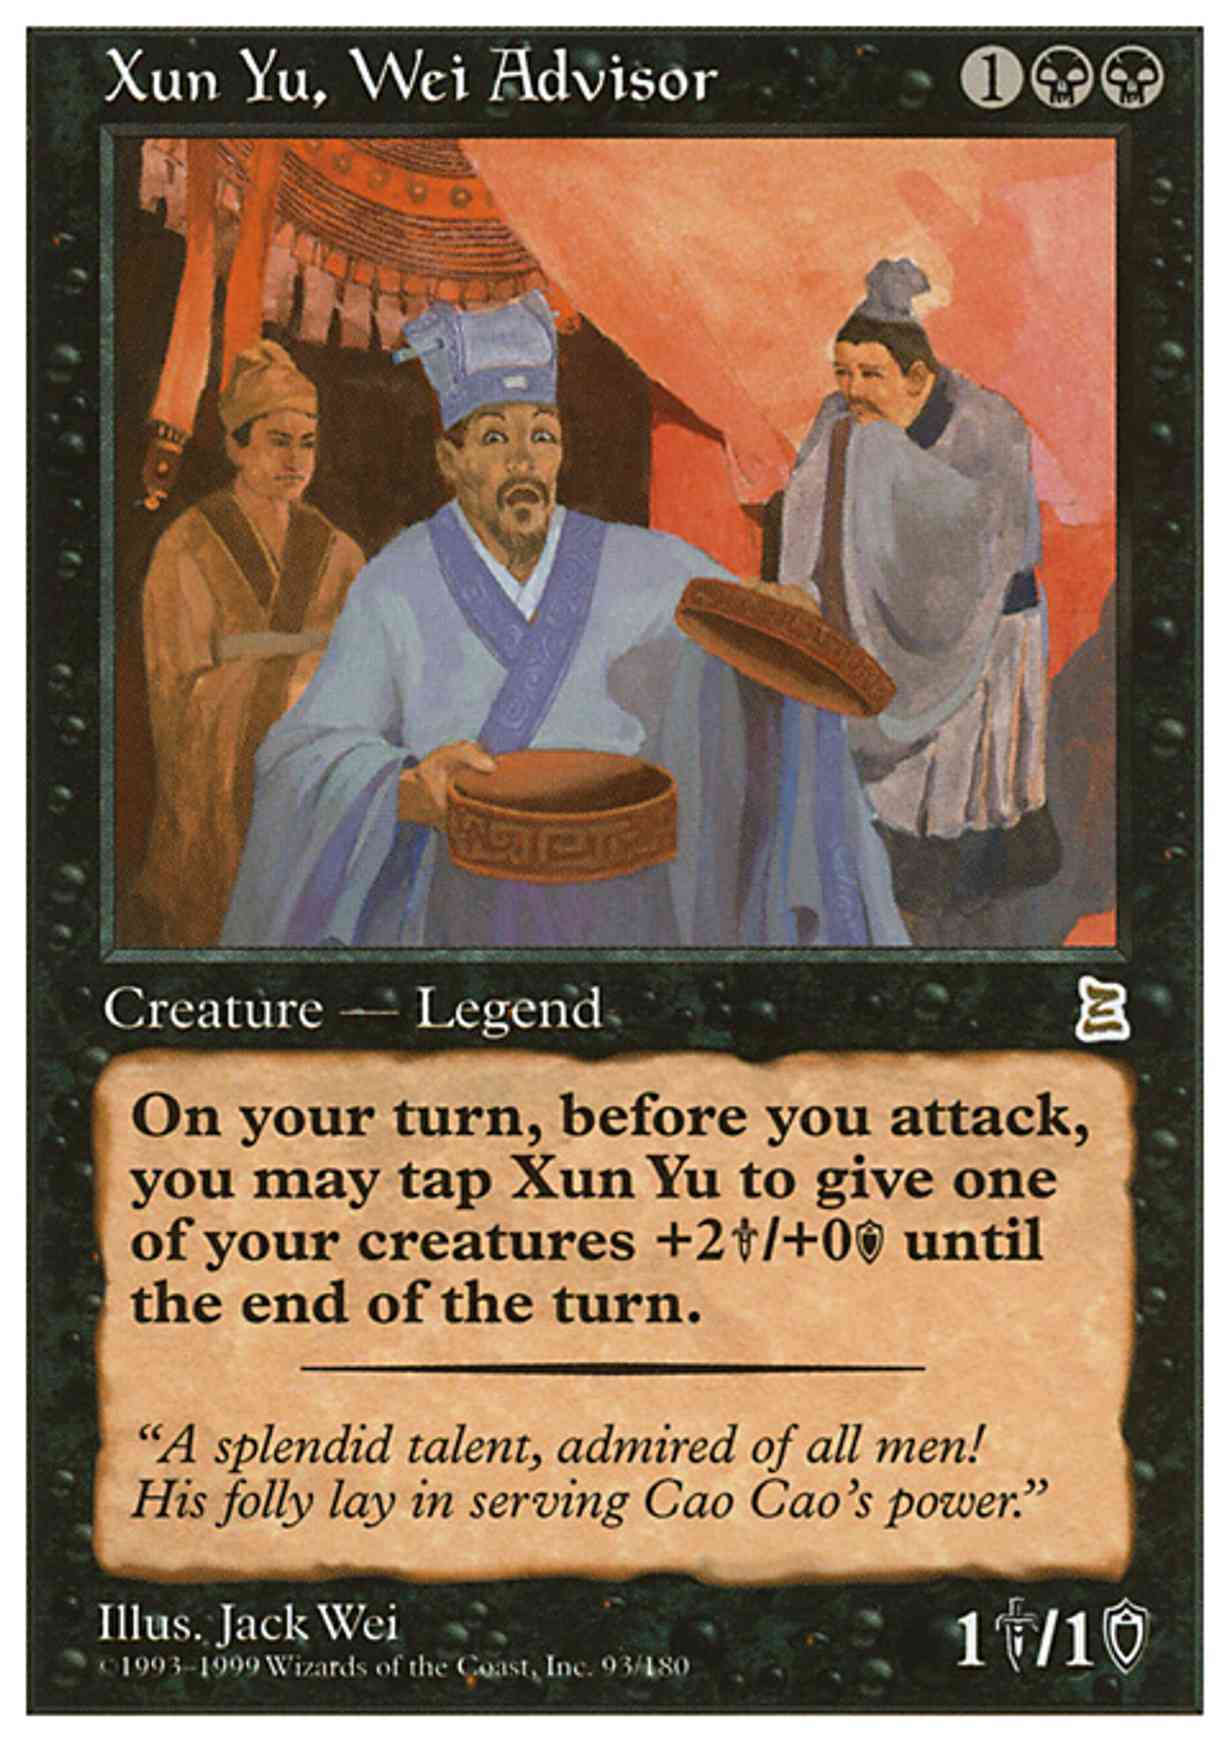 Xun Yu, Wei Advisor magic card front